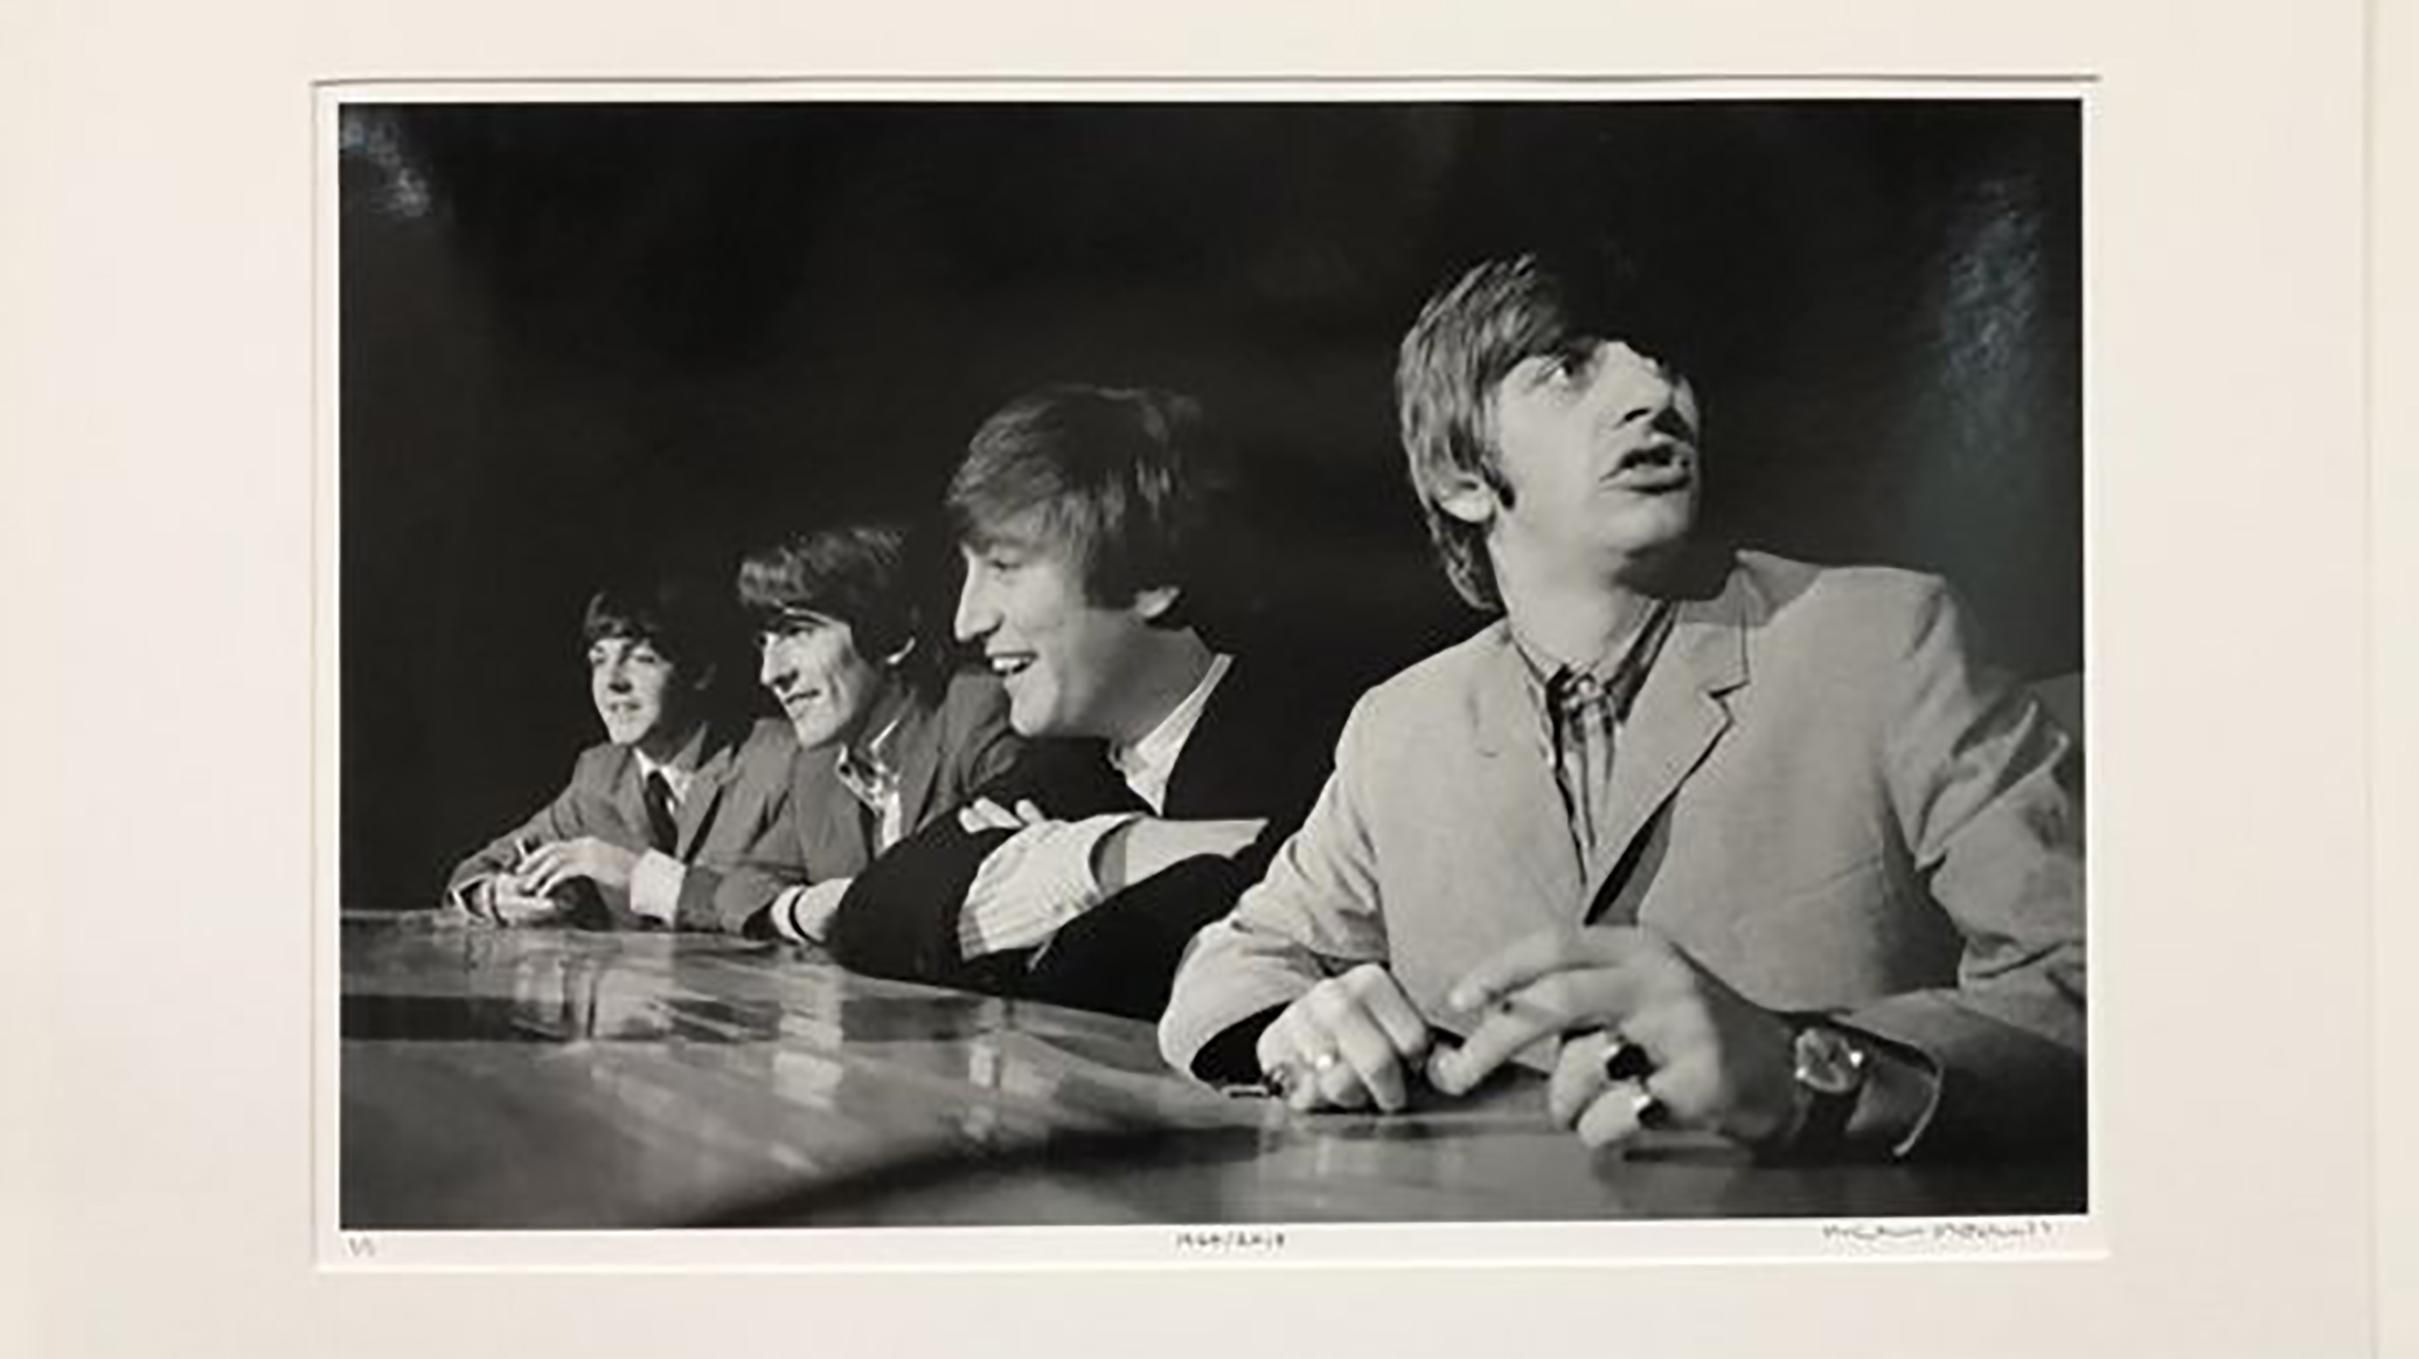 Фото первых гастролей The Beatles продали на аукционе за 250 тысяч фунтов